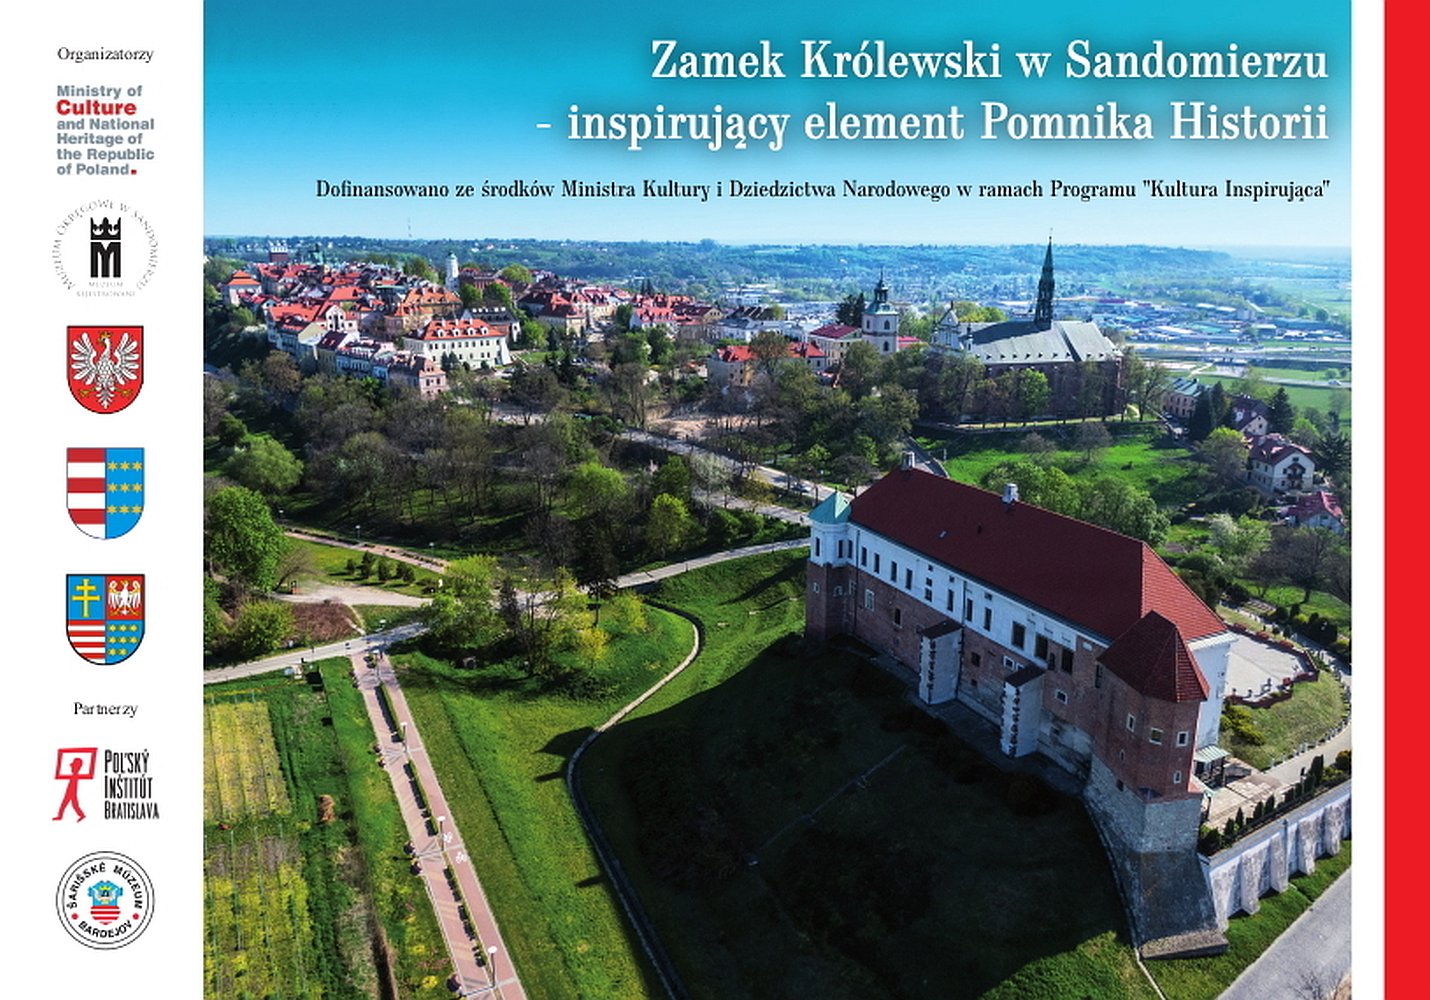 Zamek Królewski w Sandomierzu – inspirujący element Pomnika Historii